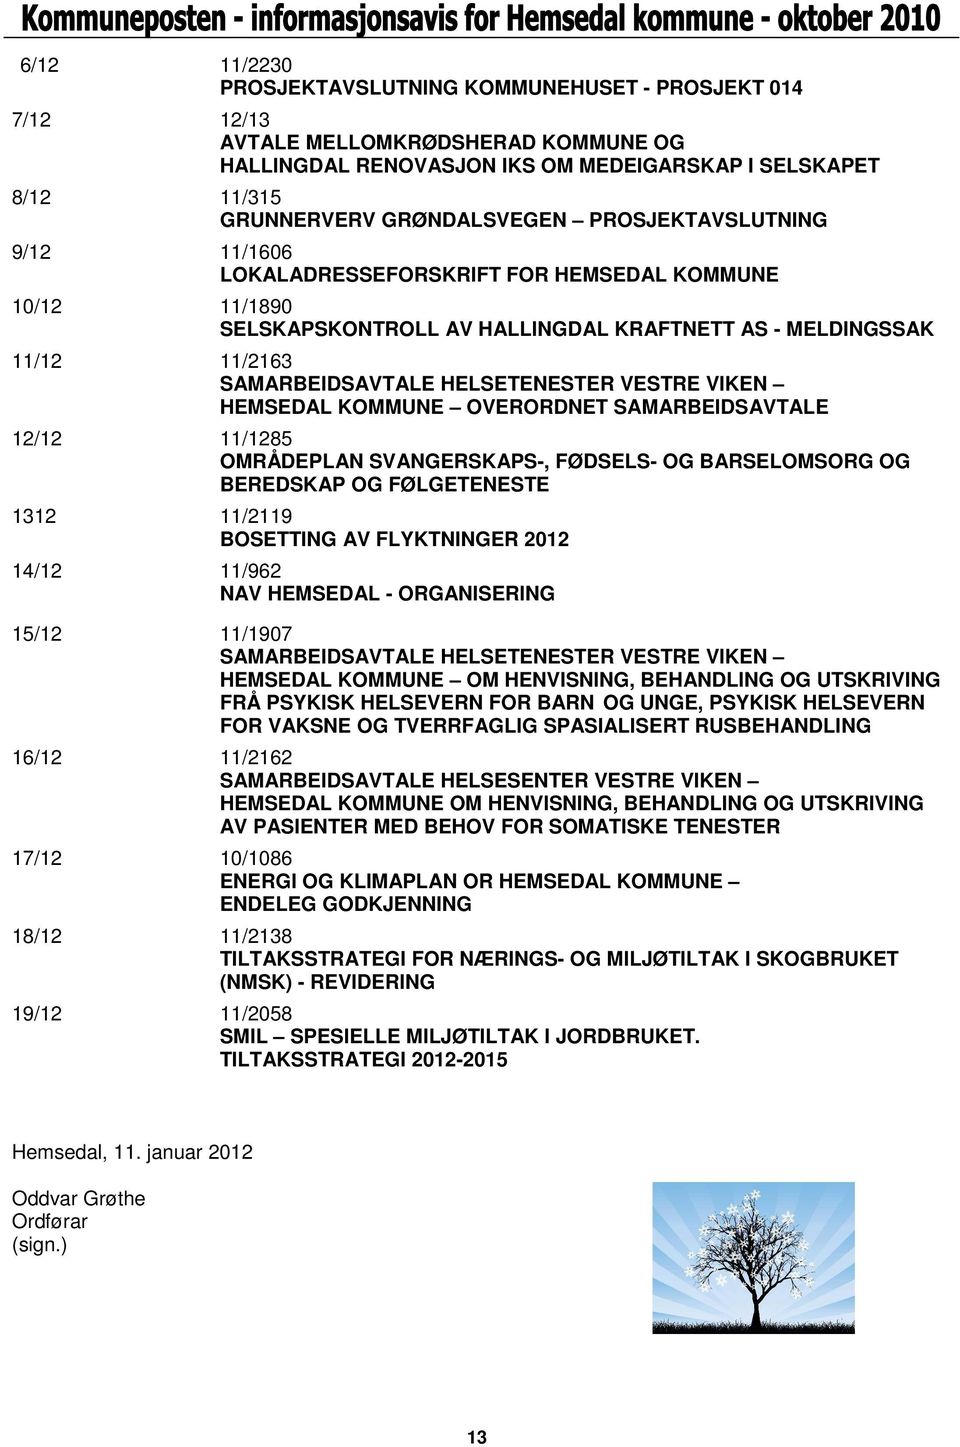 VIKEN HEMSEDAL KOMMUNE OVERORDNET SAMARBEIDSAVTALE 12/12 11/1285 OMRÅDEPLAN SVANGERSKAPS-, FØDSELS- OG BARSELOMSORG OG BEREDSKAP OG FØLGETENESTE 1312 11/2119 BOSETTING AV FLYKTNINGER 2012 14/12